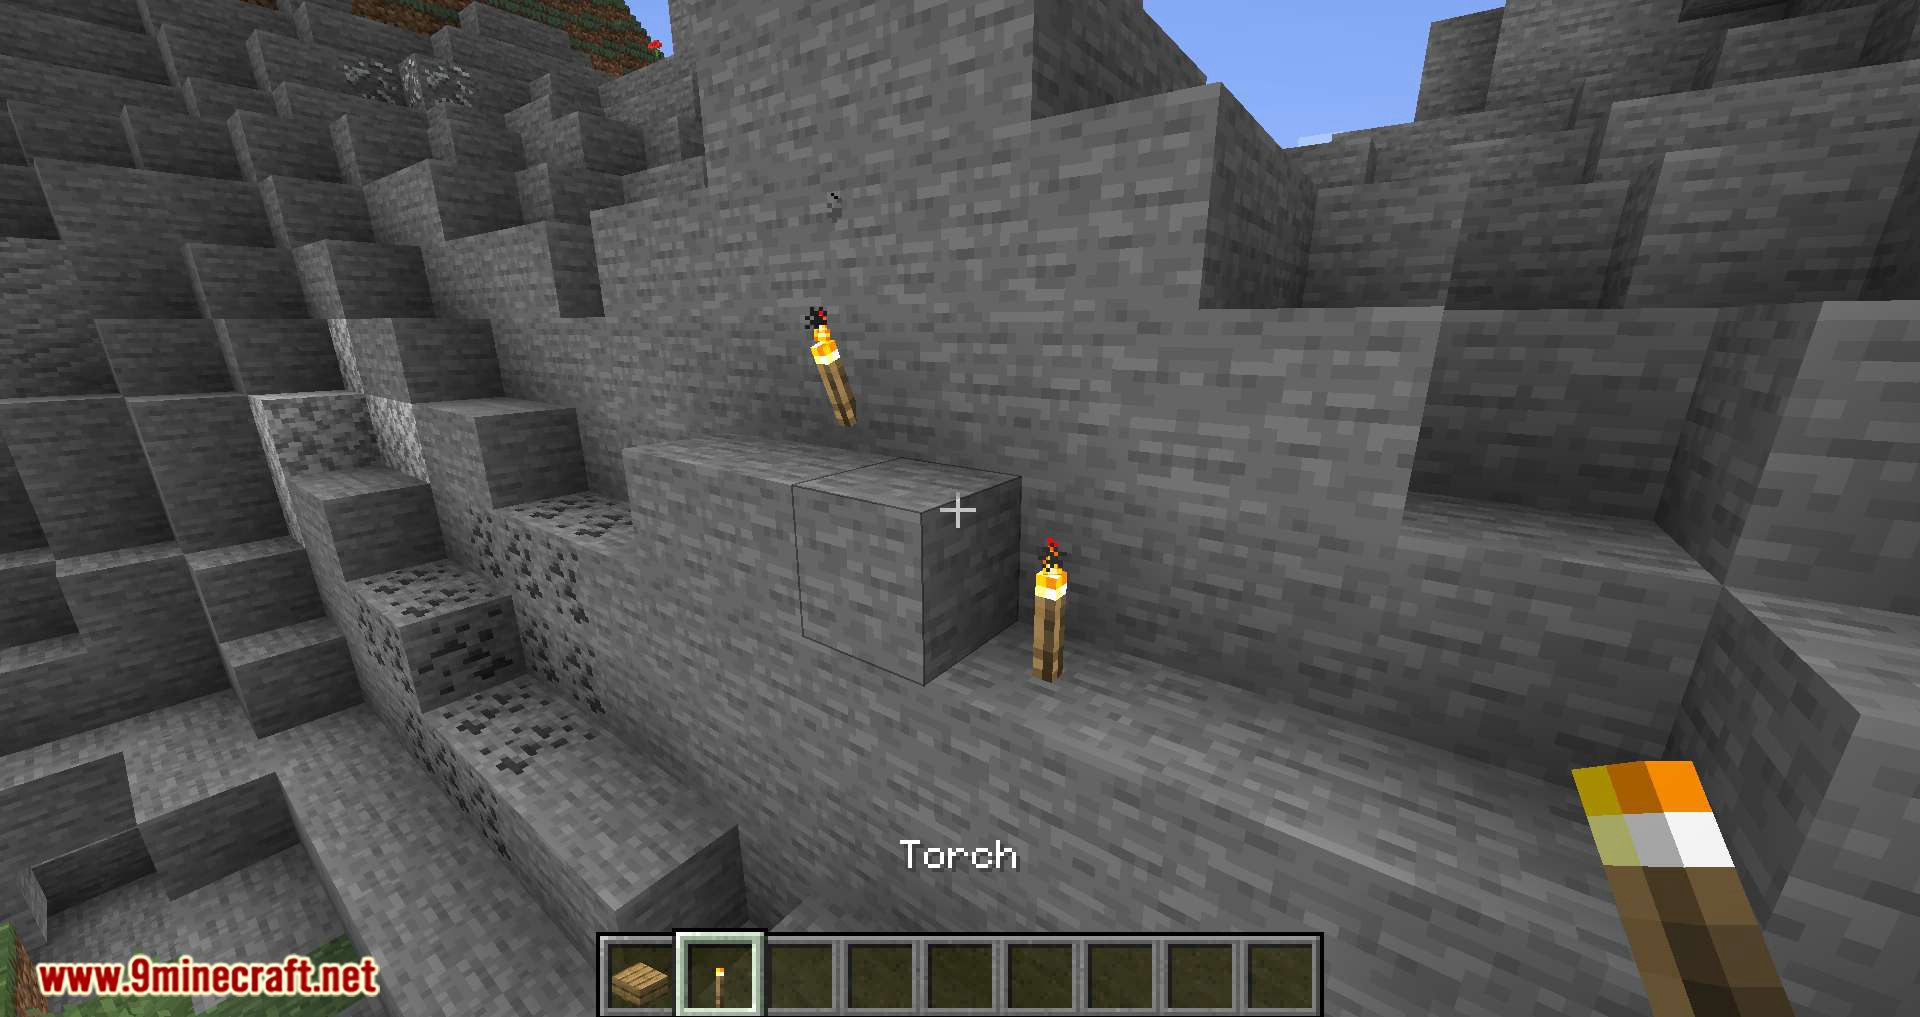 Мод на полублоки в майнкрафт. Torch Slabs. Minecraft Torch Mod. Мод на полублоки из шерсти и ступеньки. Лестница из полублоков в майнкрафт.